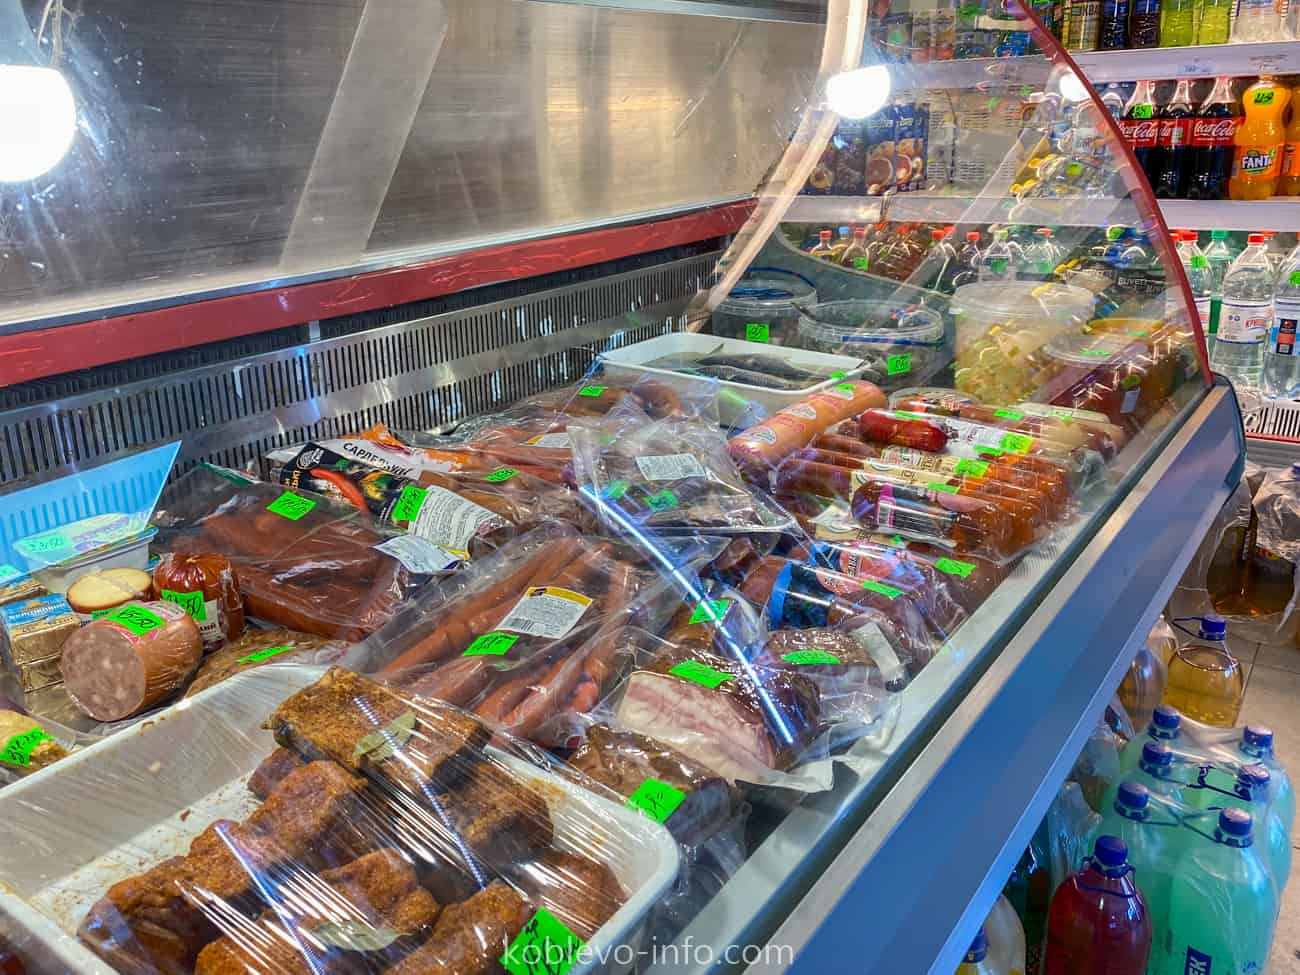 На фото изображен ассортимент колбасы в супермаркете Марка зимой в Коблево